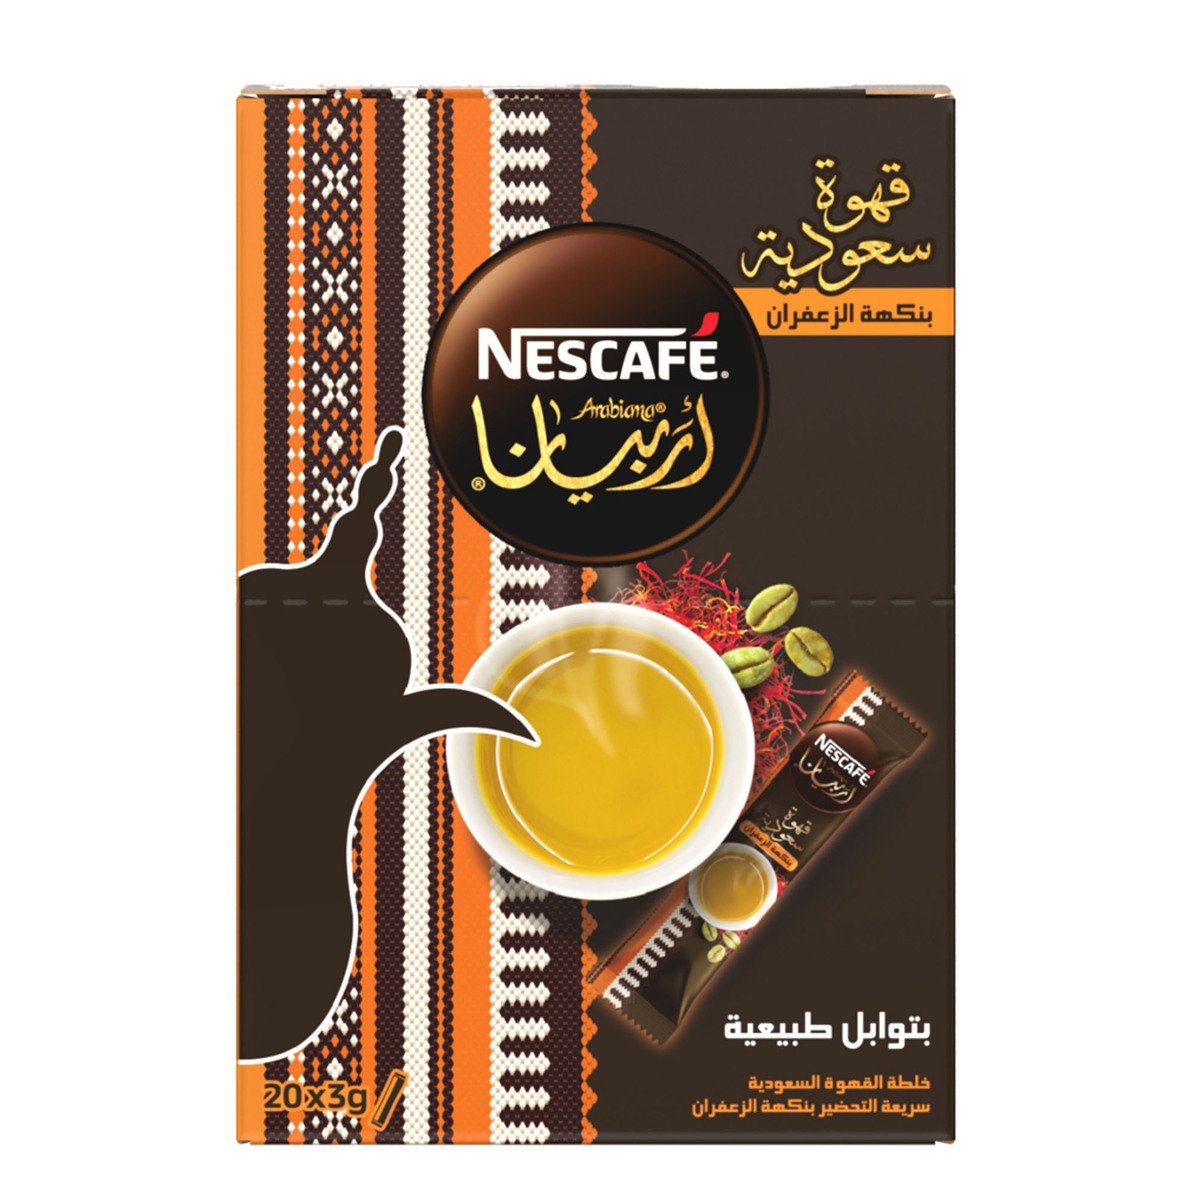 Nescafe Arabiana Coffee with Saffron Flavour 20x3g